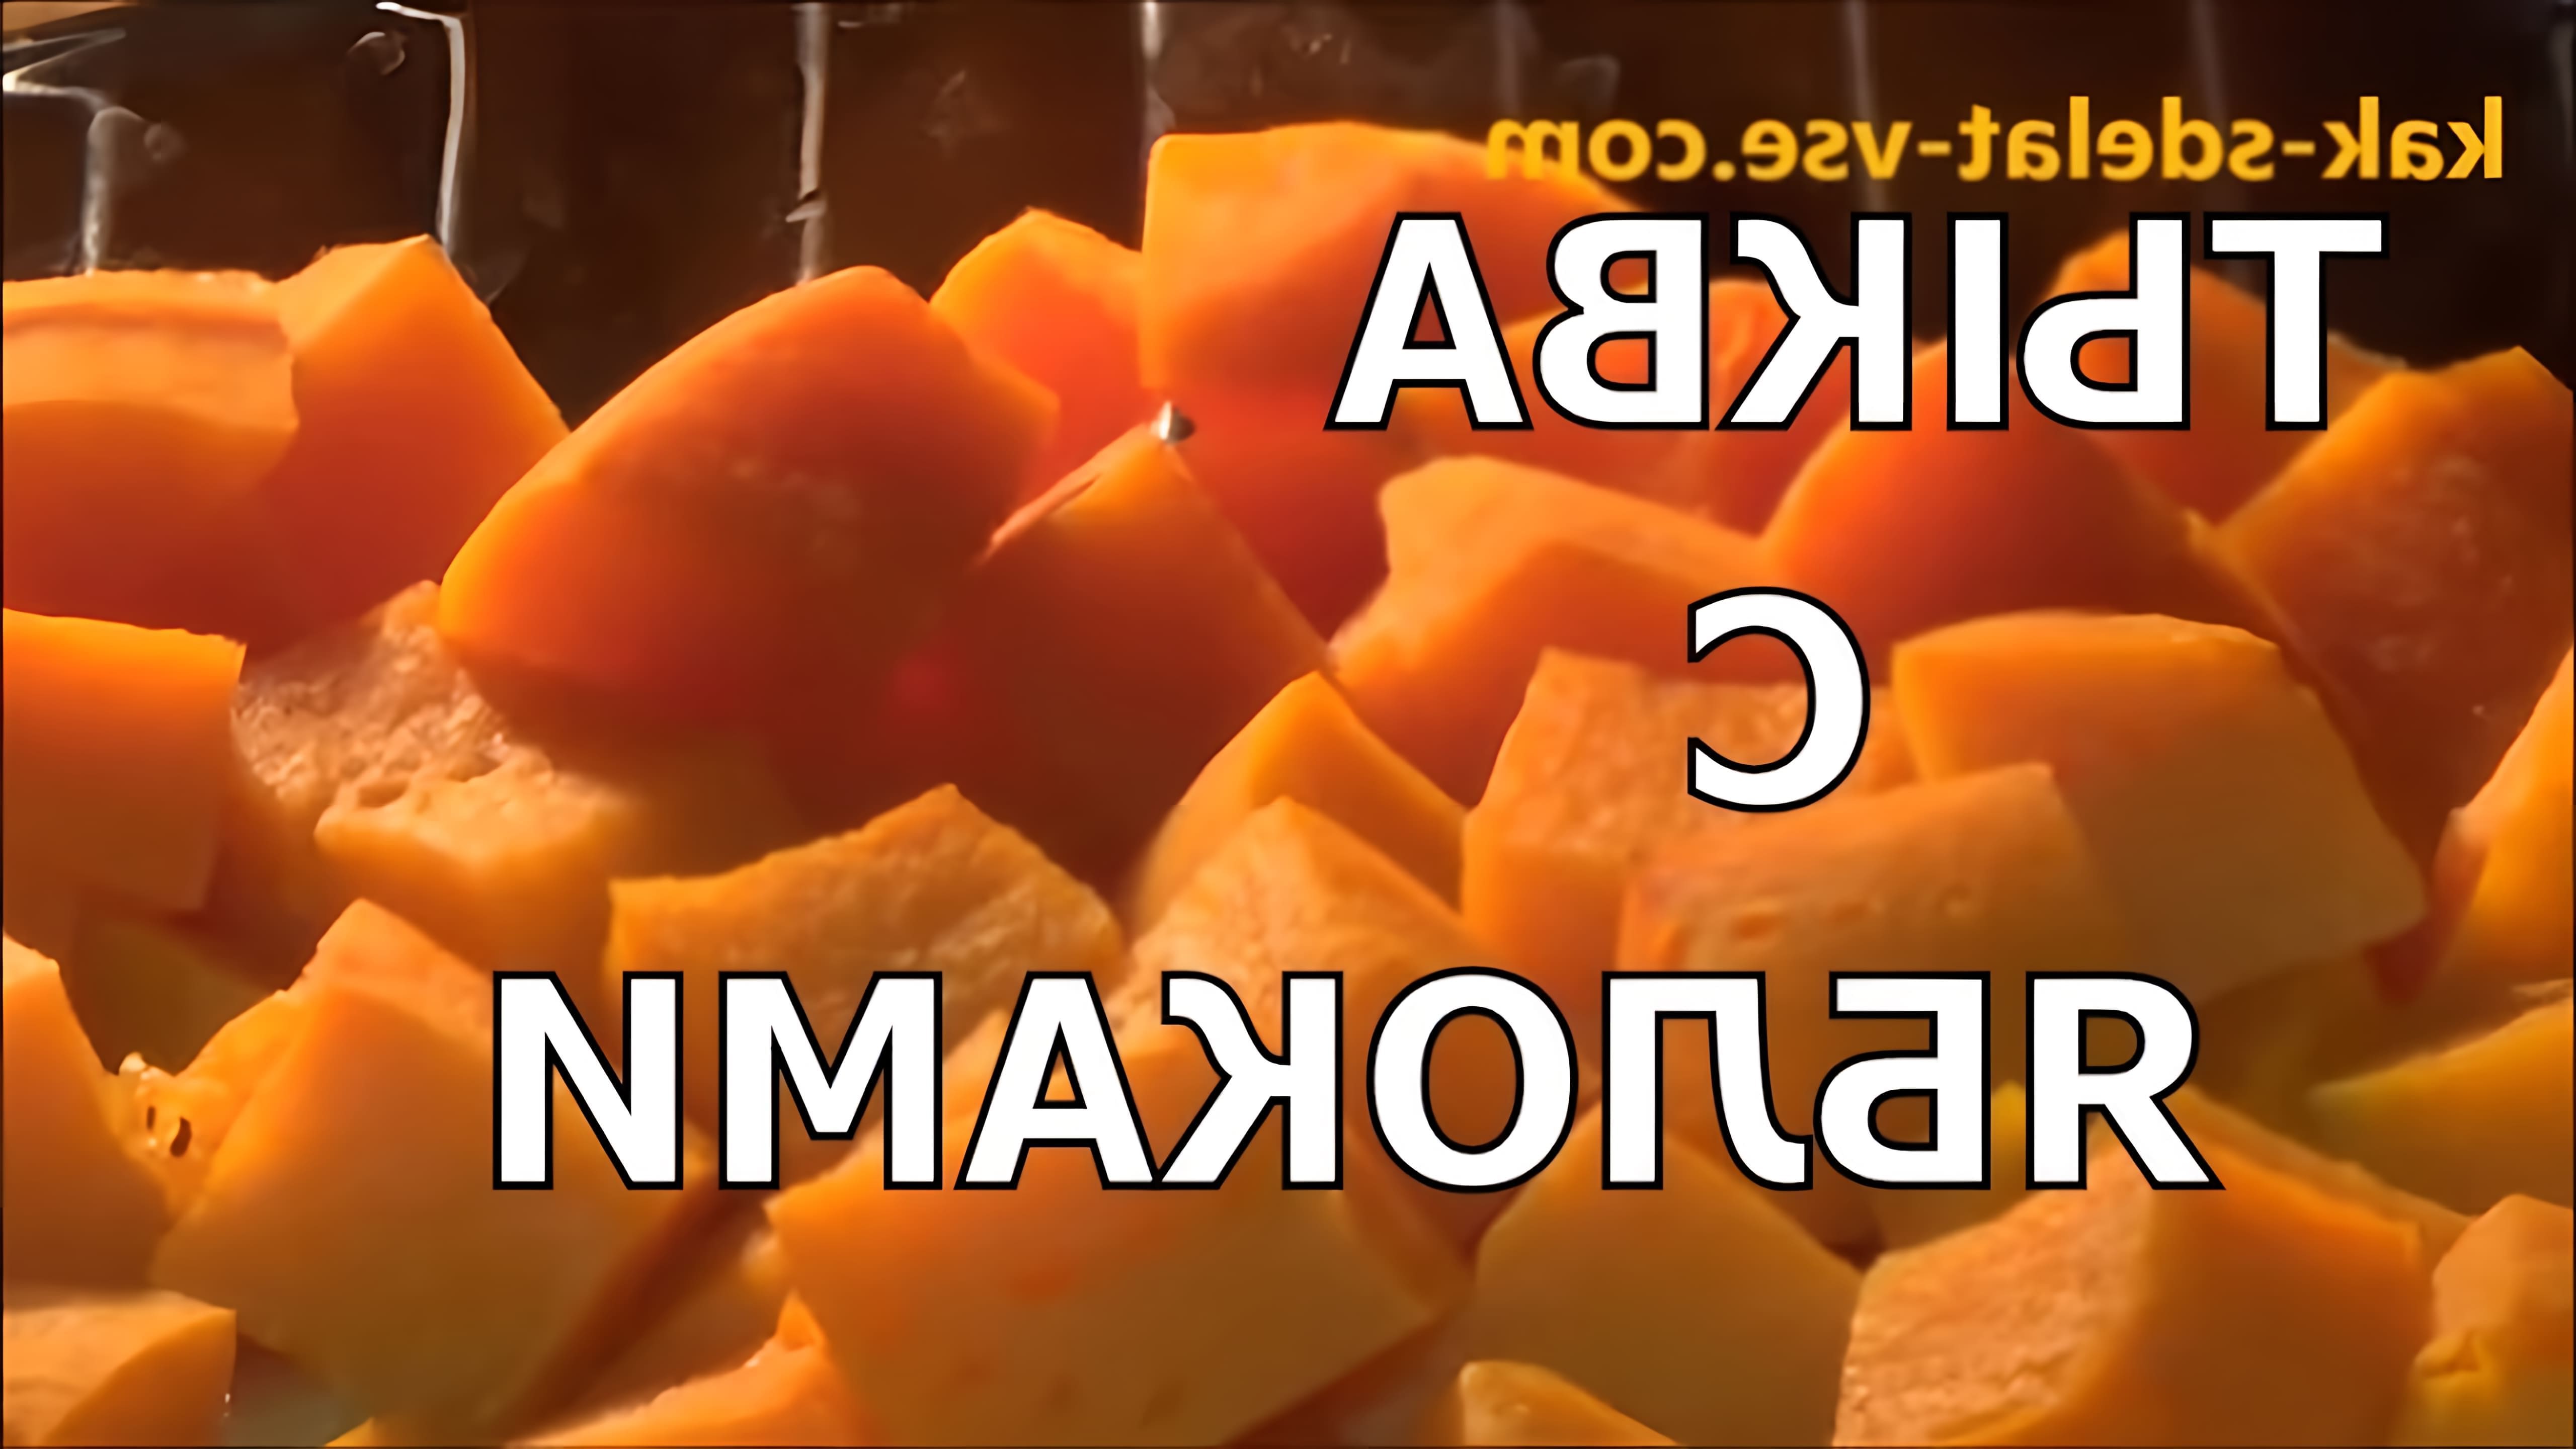 В этом видео демонстрируется процесс приготовления тыквы с яблоками в духовке